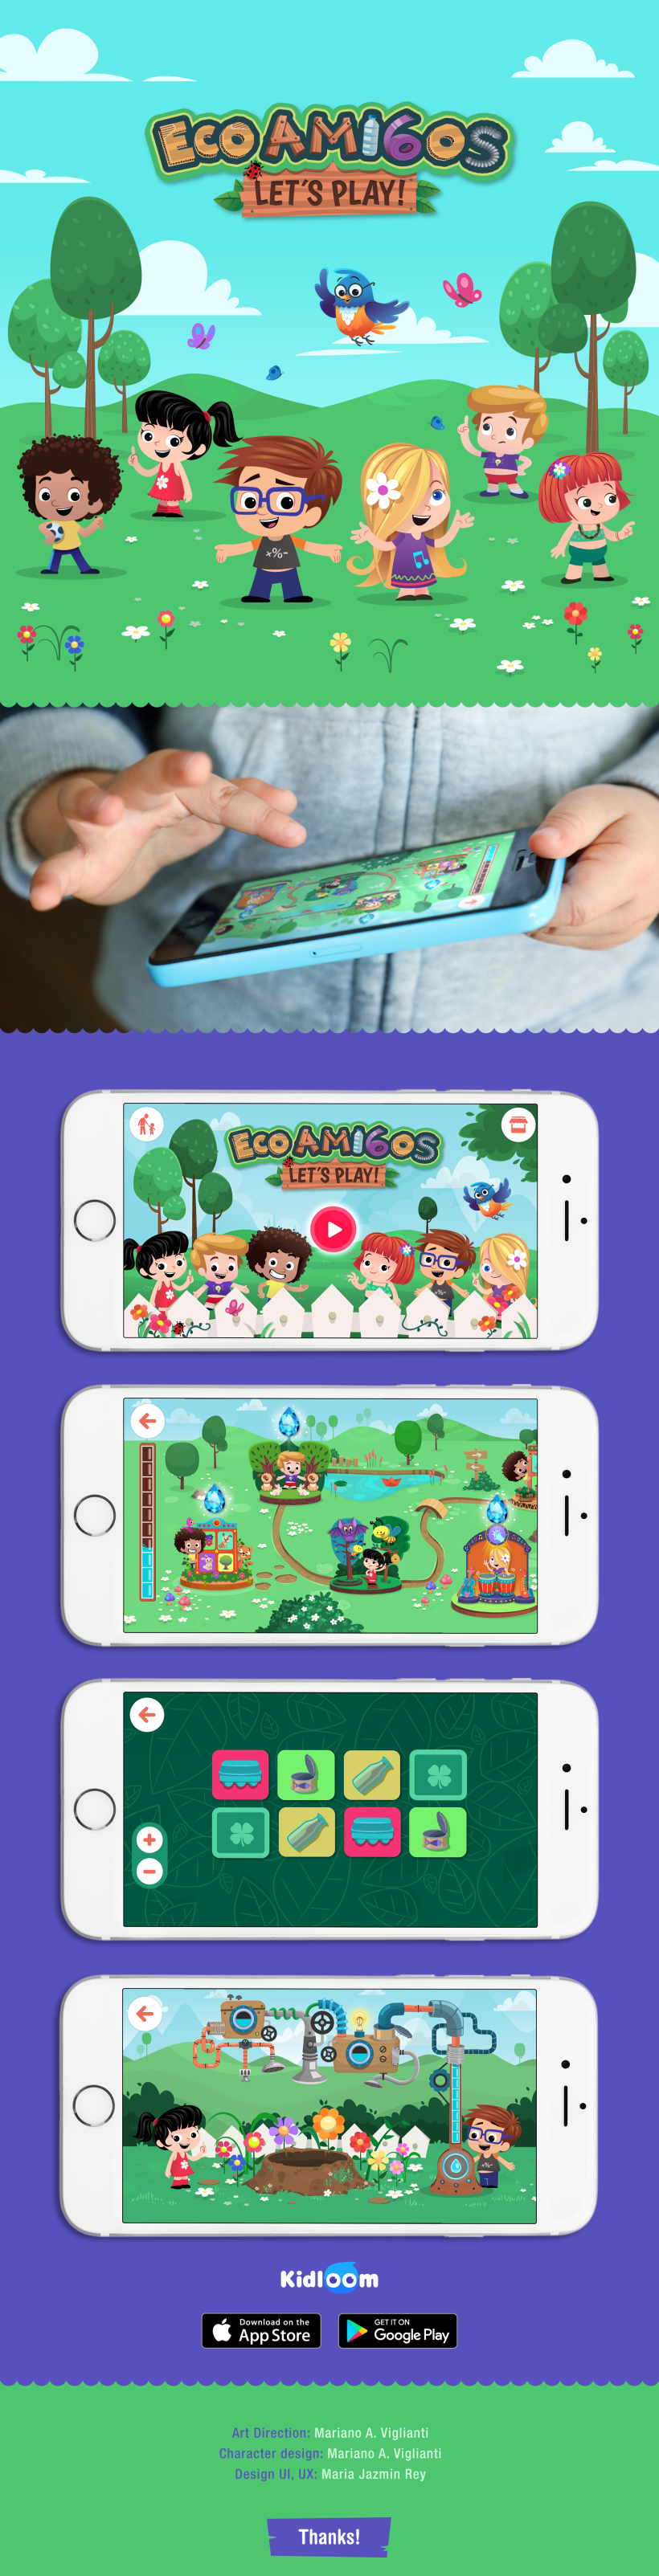 Ecoamigos let's play App -1